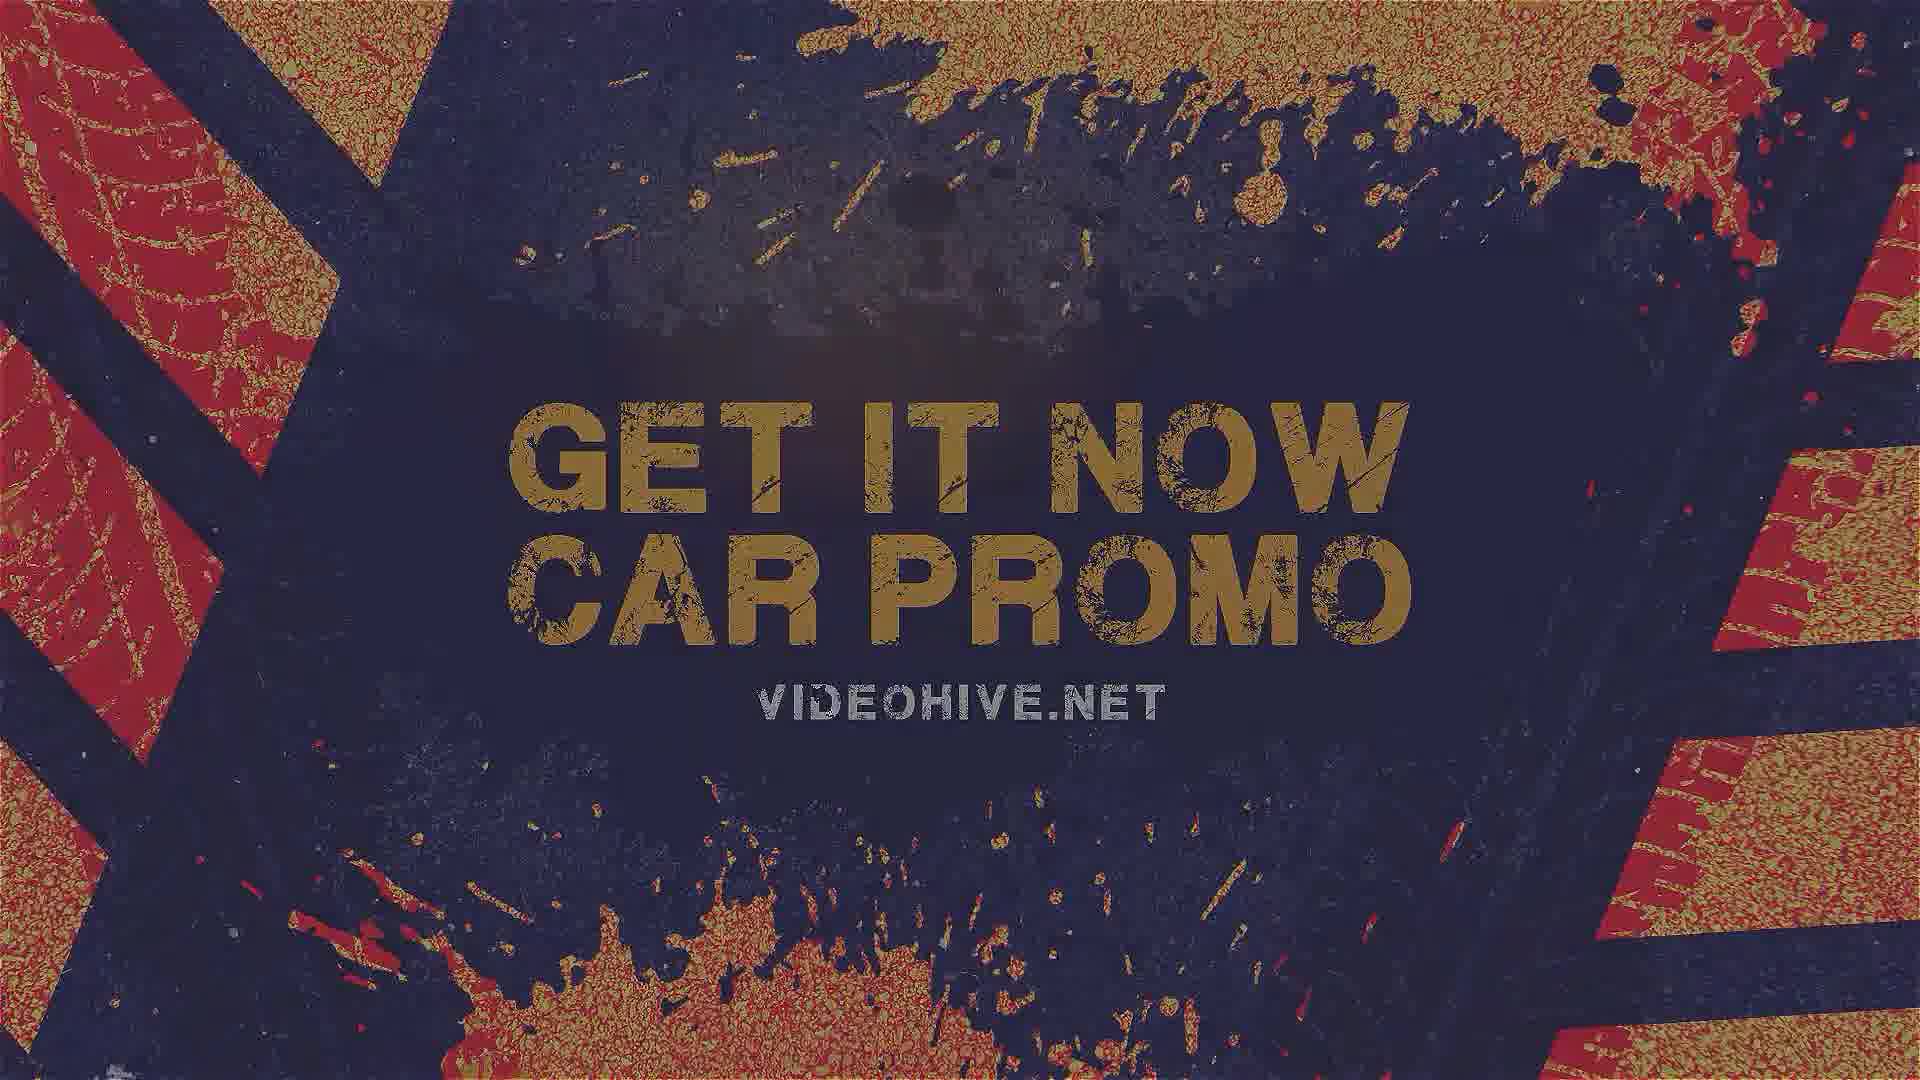 Car Asphalt Promo Videohive 38668546 Premiere Pro Image 12